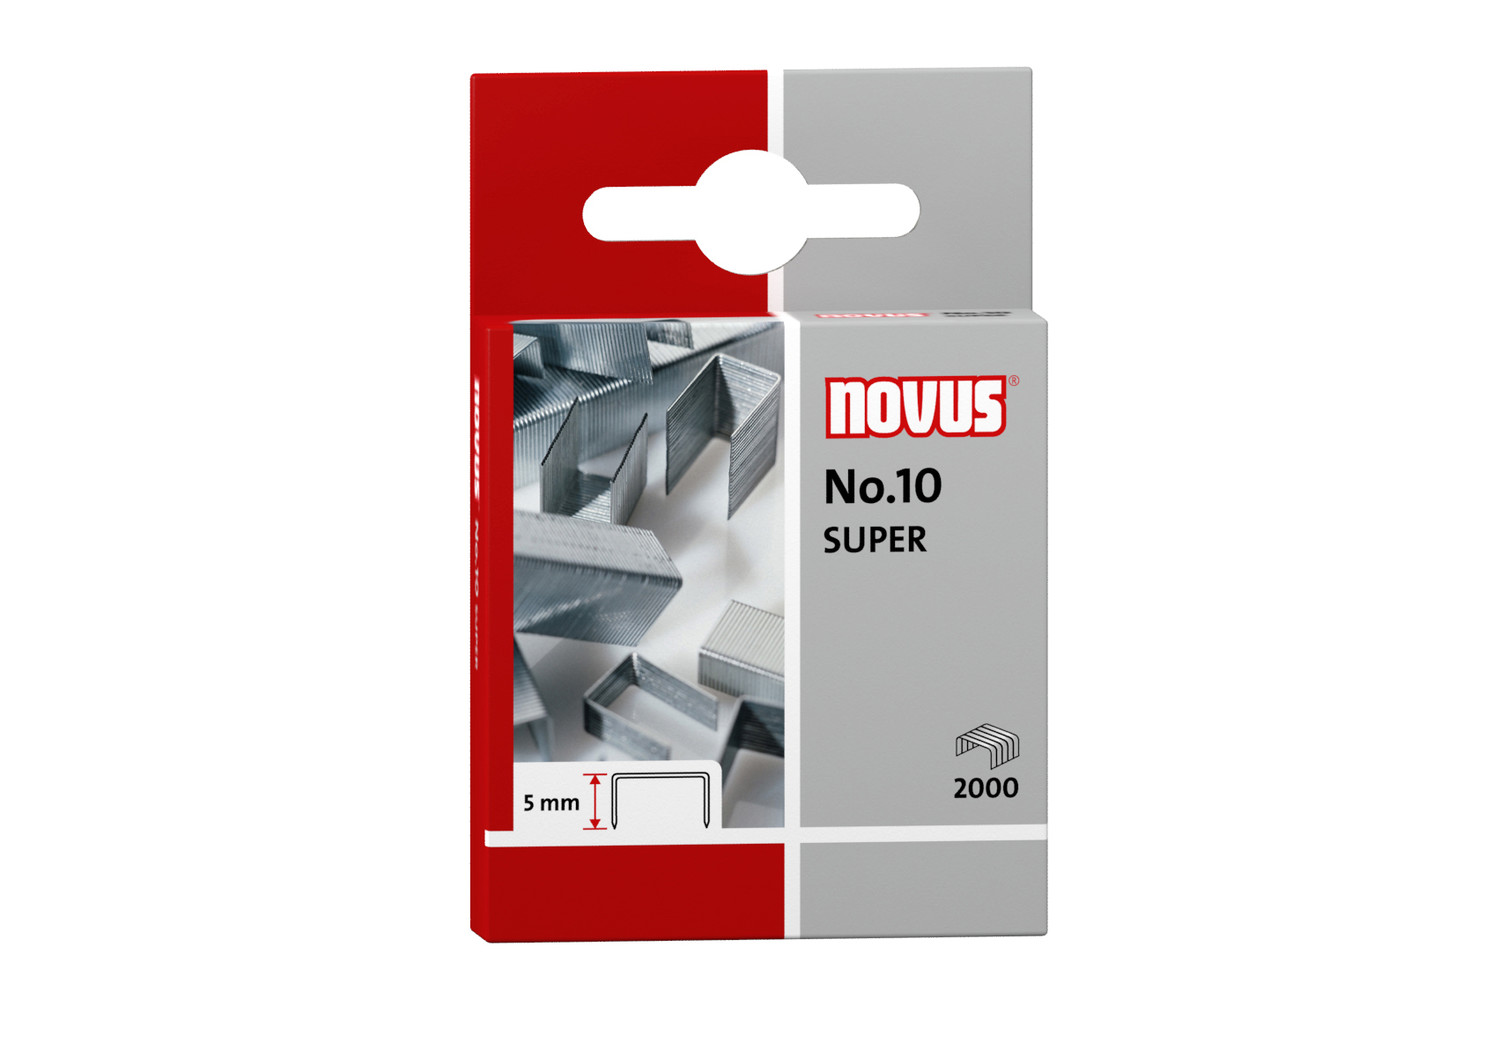 NOVUS No.10 SUPER - Box of 2,000 pieces